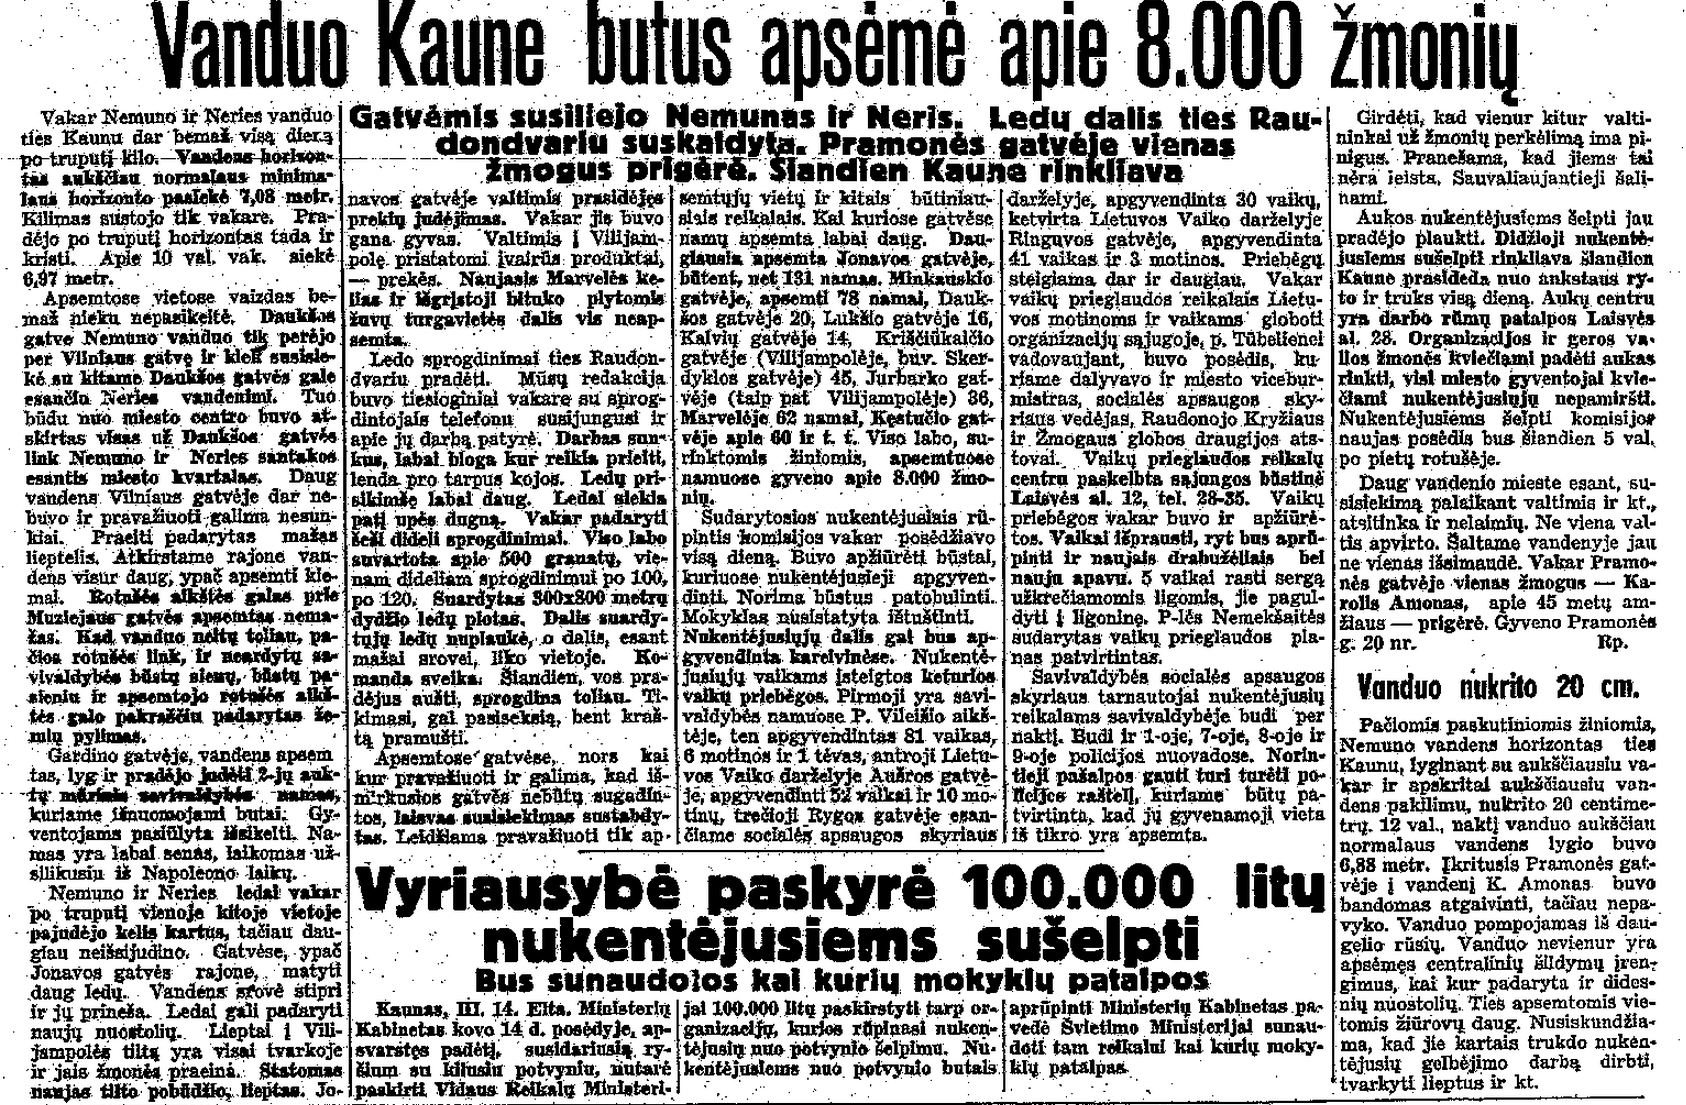 LA, 1936.03.15, p.1 - Vanduo Kaune butus apsėmė apie 8,000 žmonių